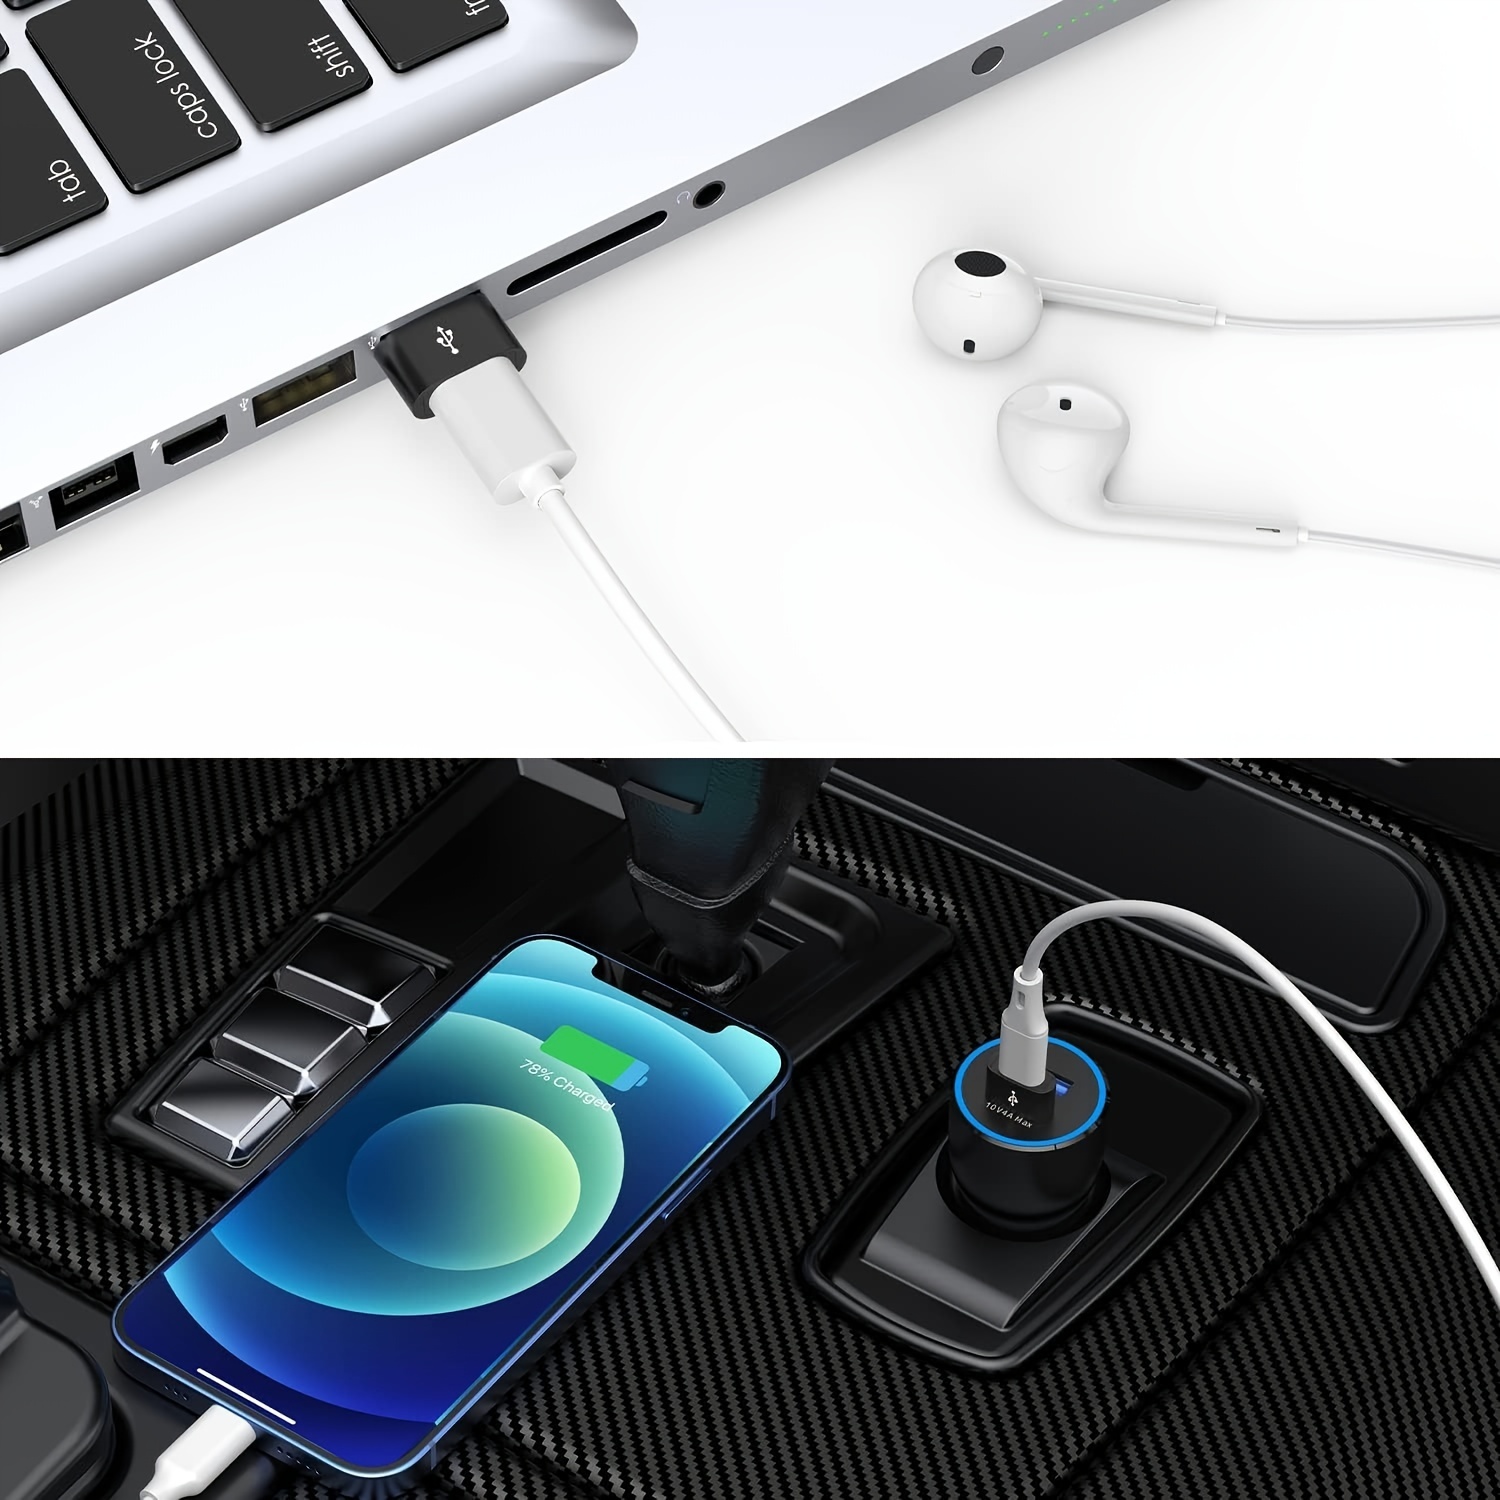 Adaptateur USB vers USB C 3-Pack,Type C Femelle USB A Mâle Convertisseur  Chargeur pour Apple iPhone 11 12 13 14 15 Pro Max,iPad 10e Air 4e 5e Mini